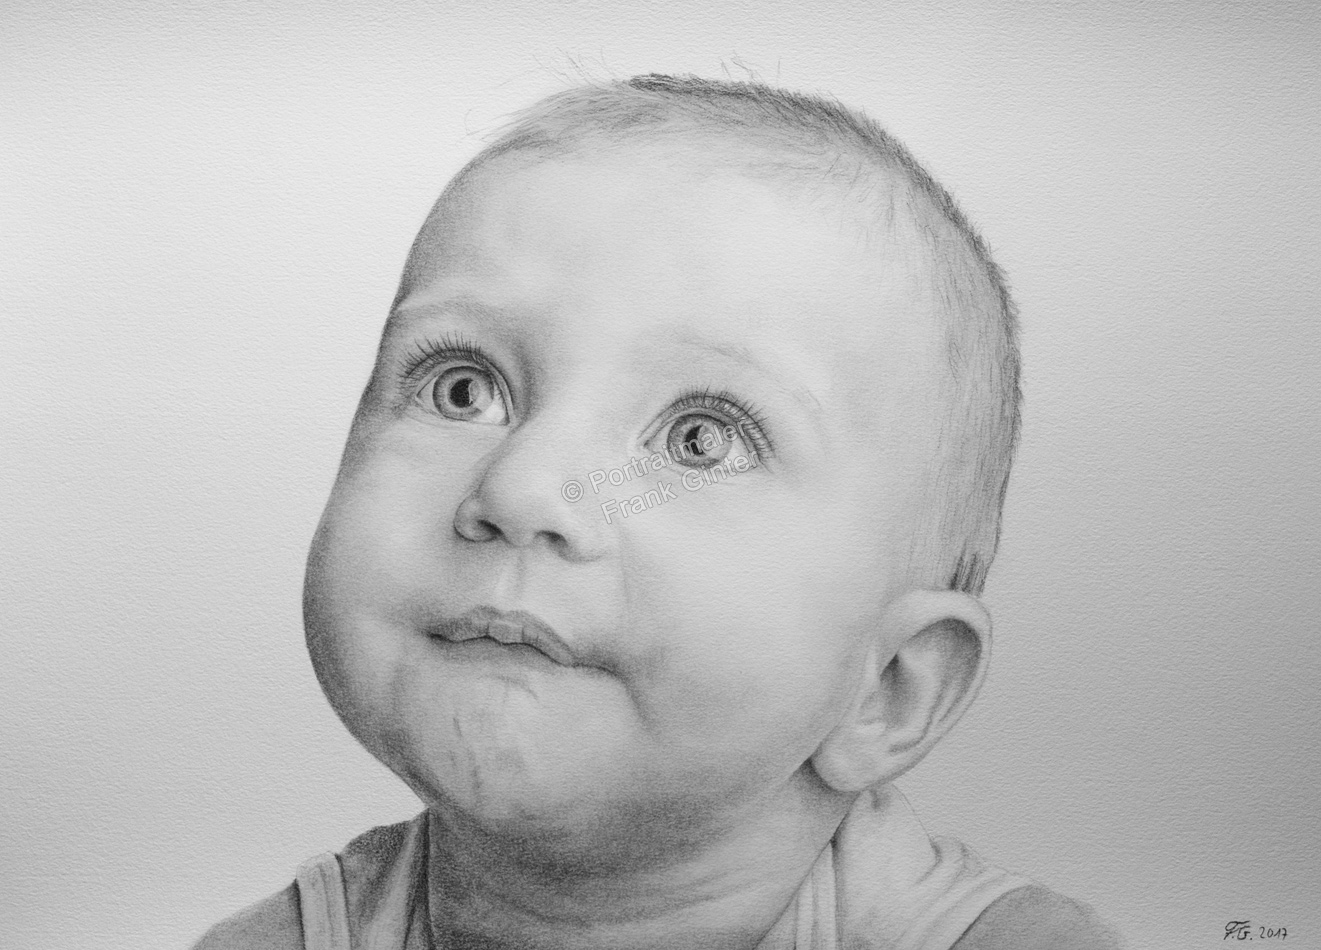 Bleistiftzeichnungen, Portraitzeichnung, Baby Zeichnung, Bleistiftzeichnung, Portraitzeichner